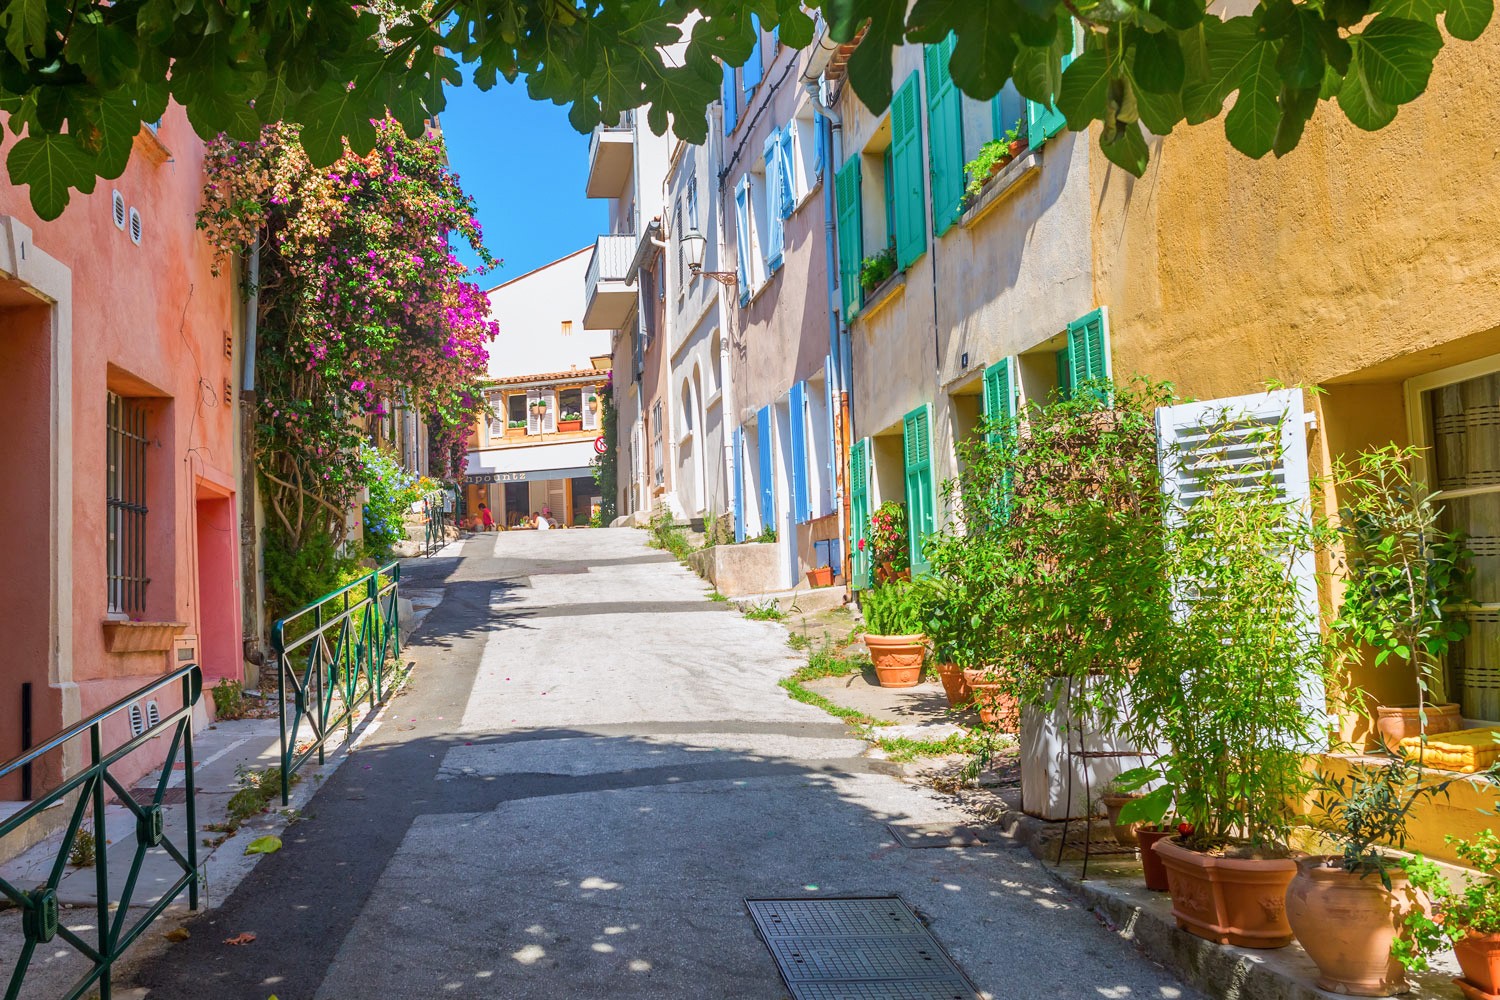 قرية سان تروبيه في فرنسا Saint-Tropez village in France،ابرز الوجهات السياحية في فرنسا